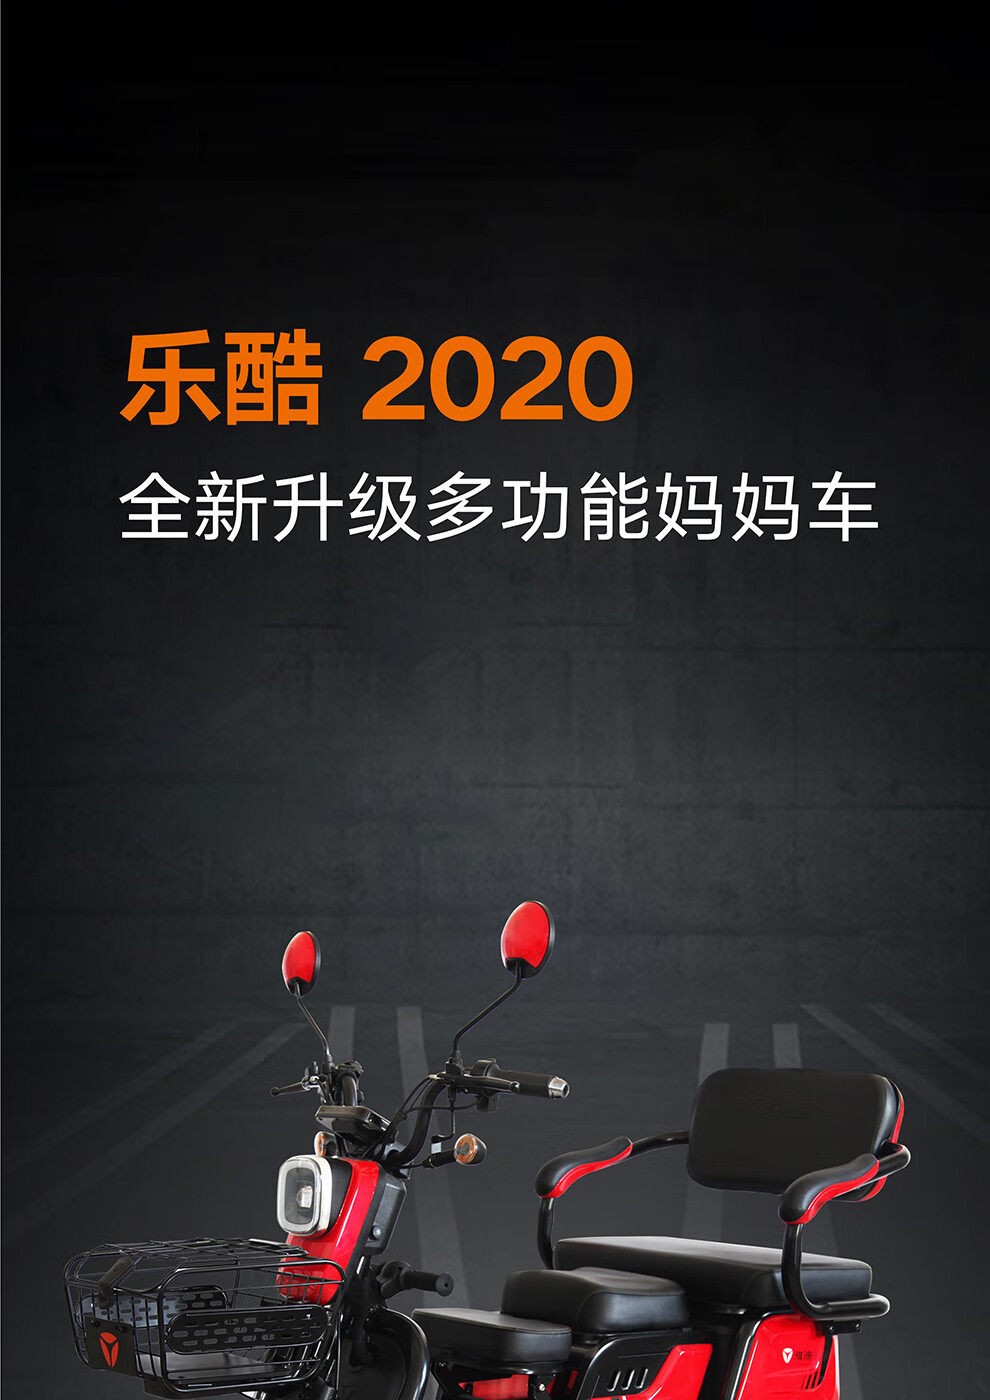 雅迪yadea新款48v电动车乐酷2020升级多功能电动三轮车助力电瓶车 乐